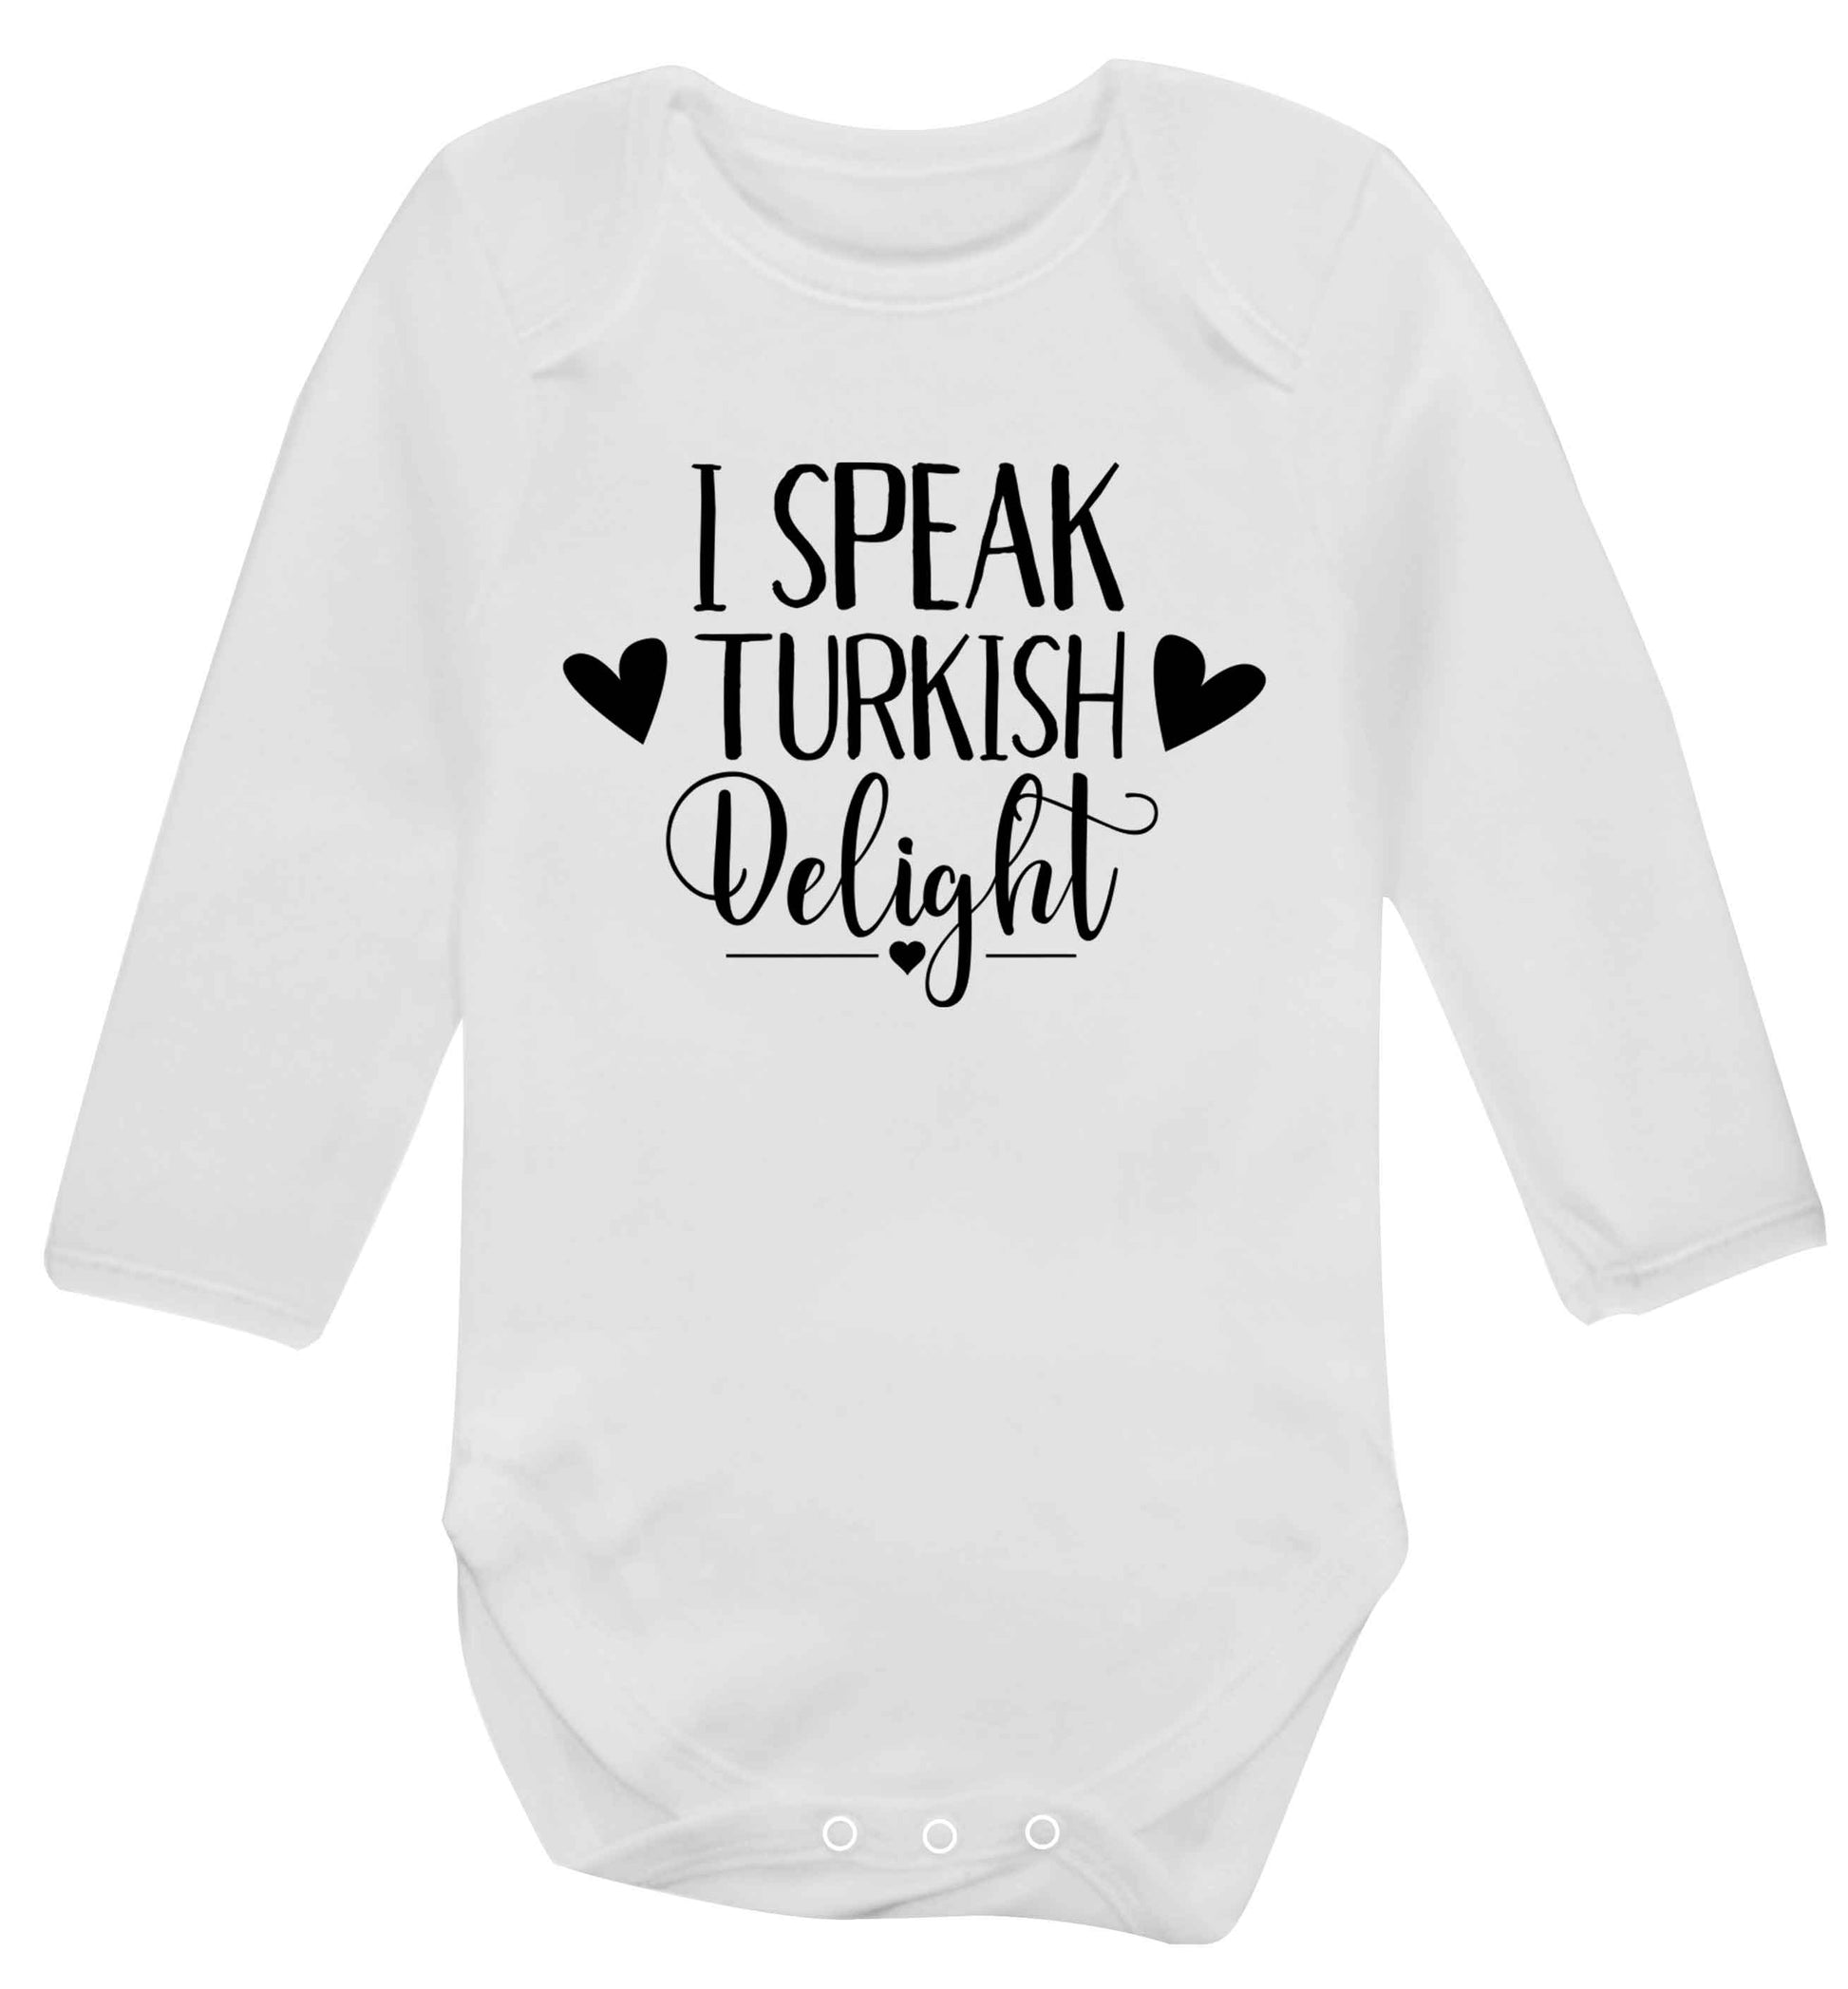 I speak turkish...delight Baby Vest long sleeved white 6-12 months